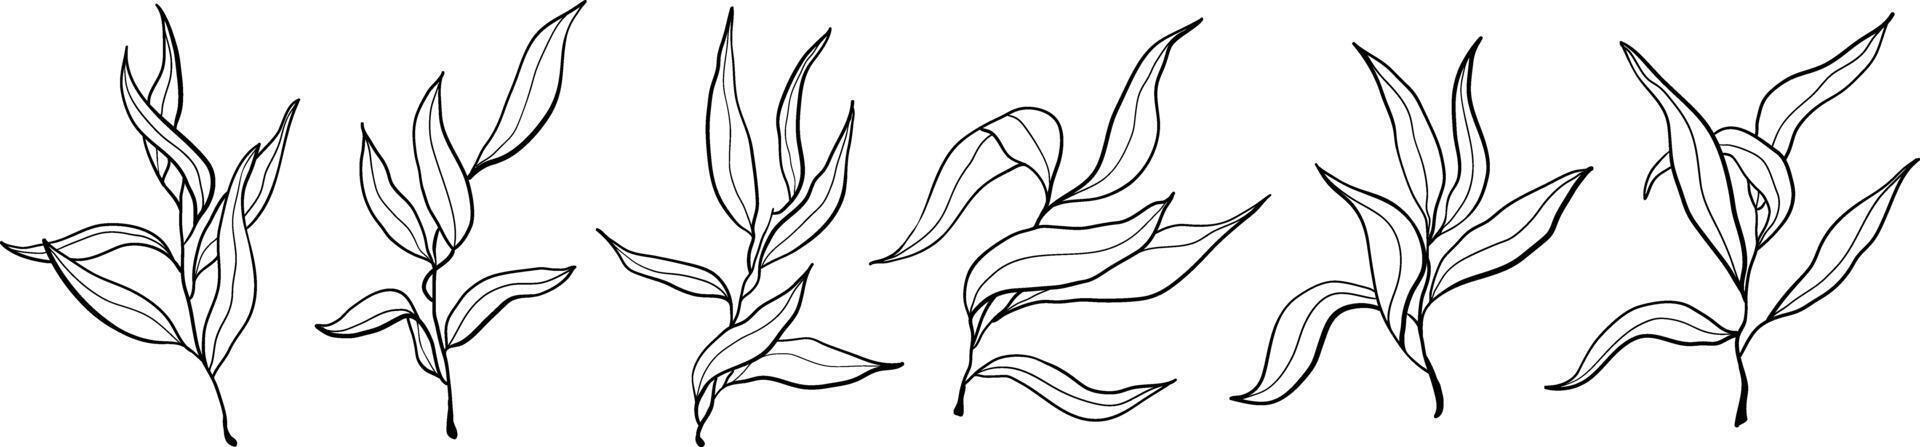 vektor hand dragen natur oliv grenar ikoner uppsättning. klotter växter illustration isolerat på vit bakgrund.